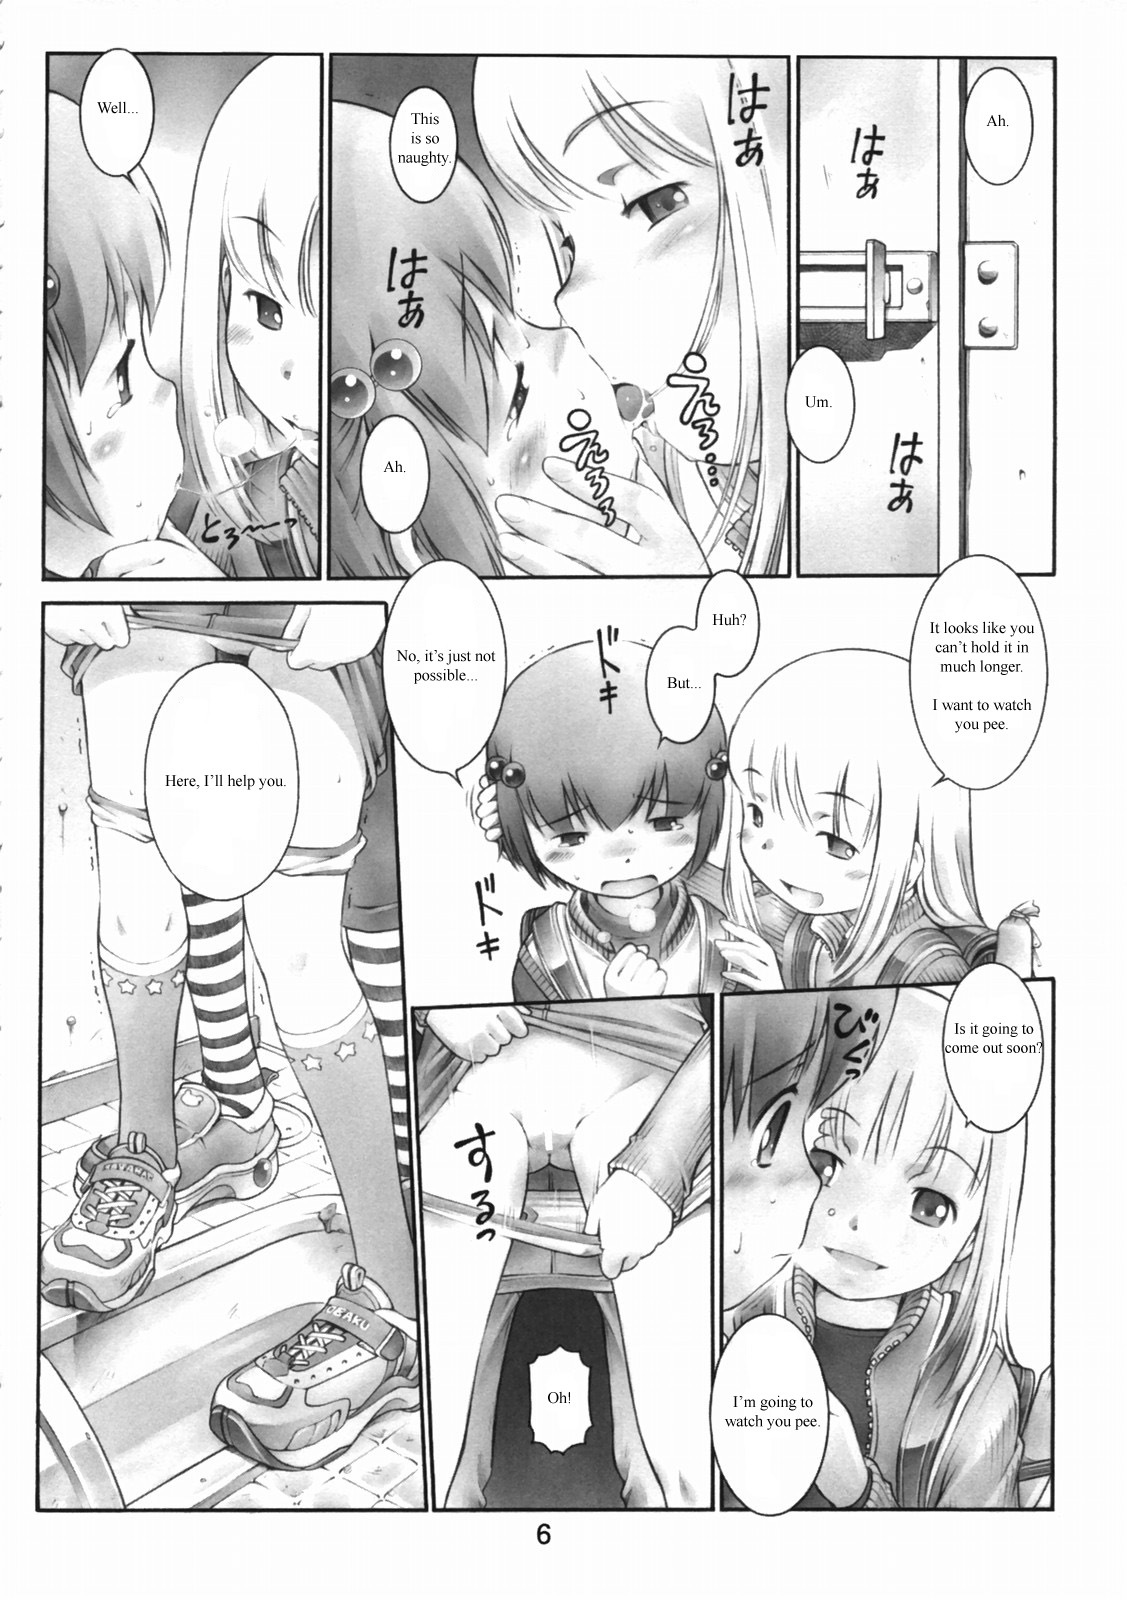 Oshiri Kizzu 12 original 4 hentai manga